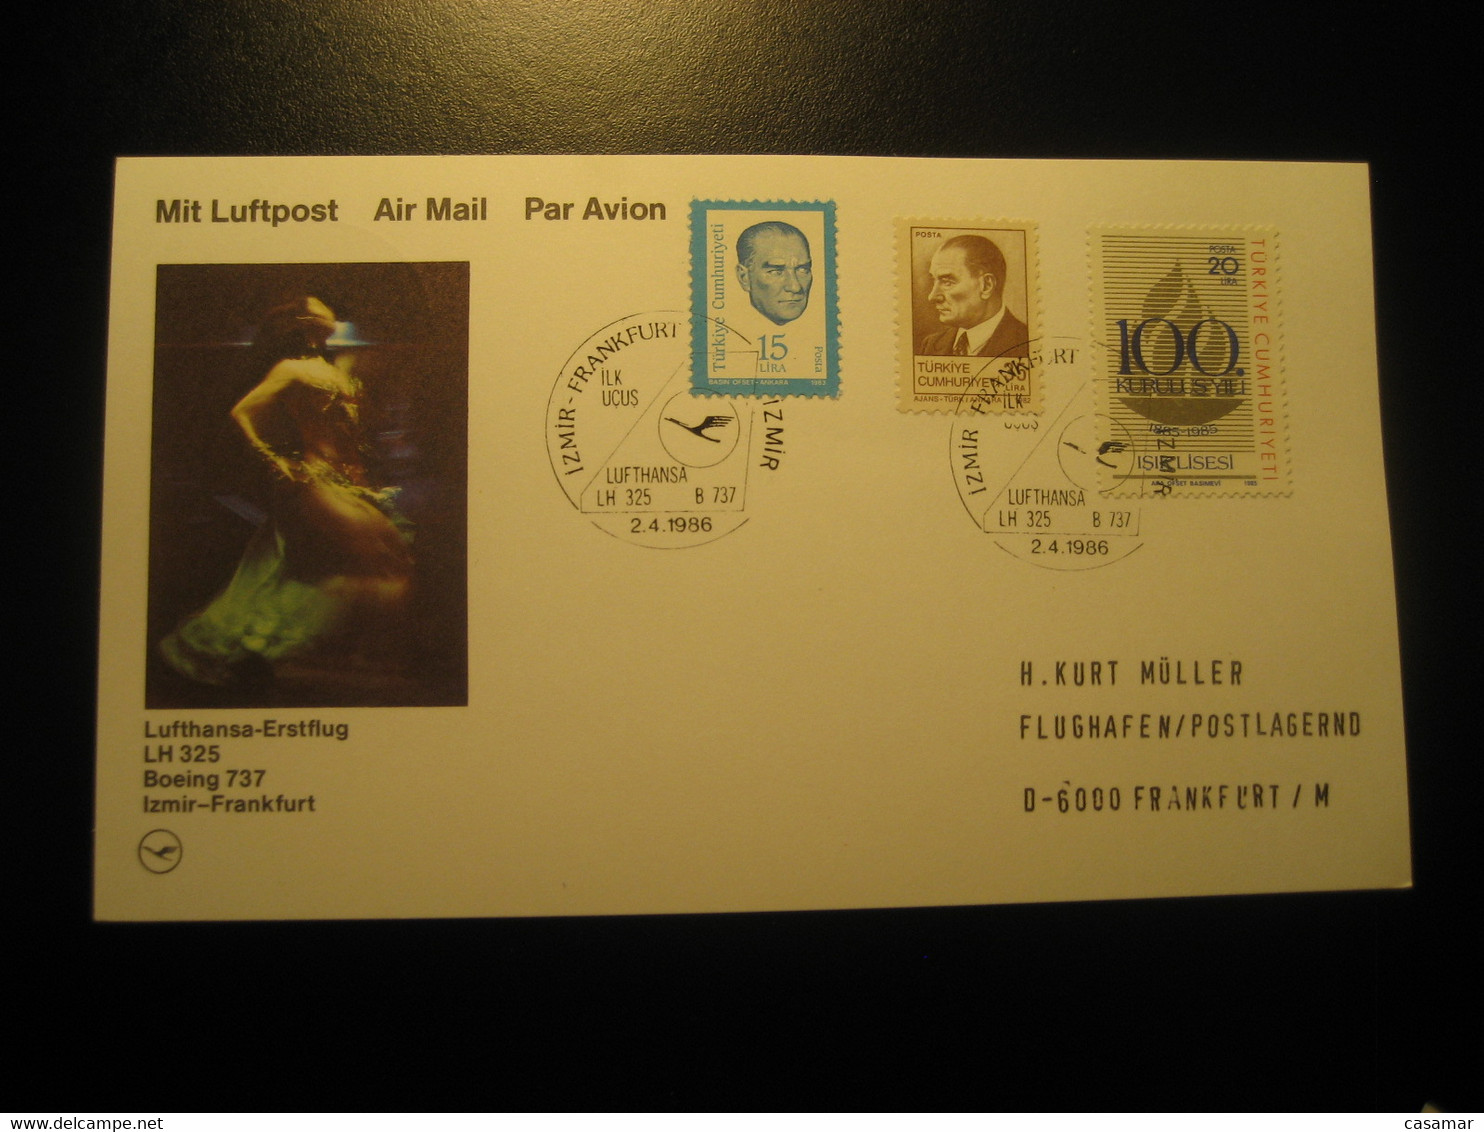 Izmir Frankfurt 1986 Lufthansa Airline Boeing 737 First Flight 3 Stamp Cancel Card Turkey Germany - Poste Aérienne